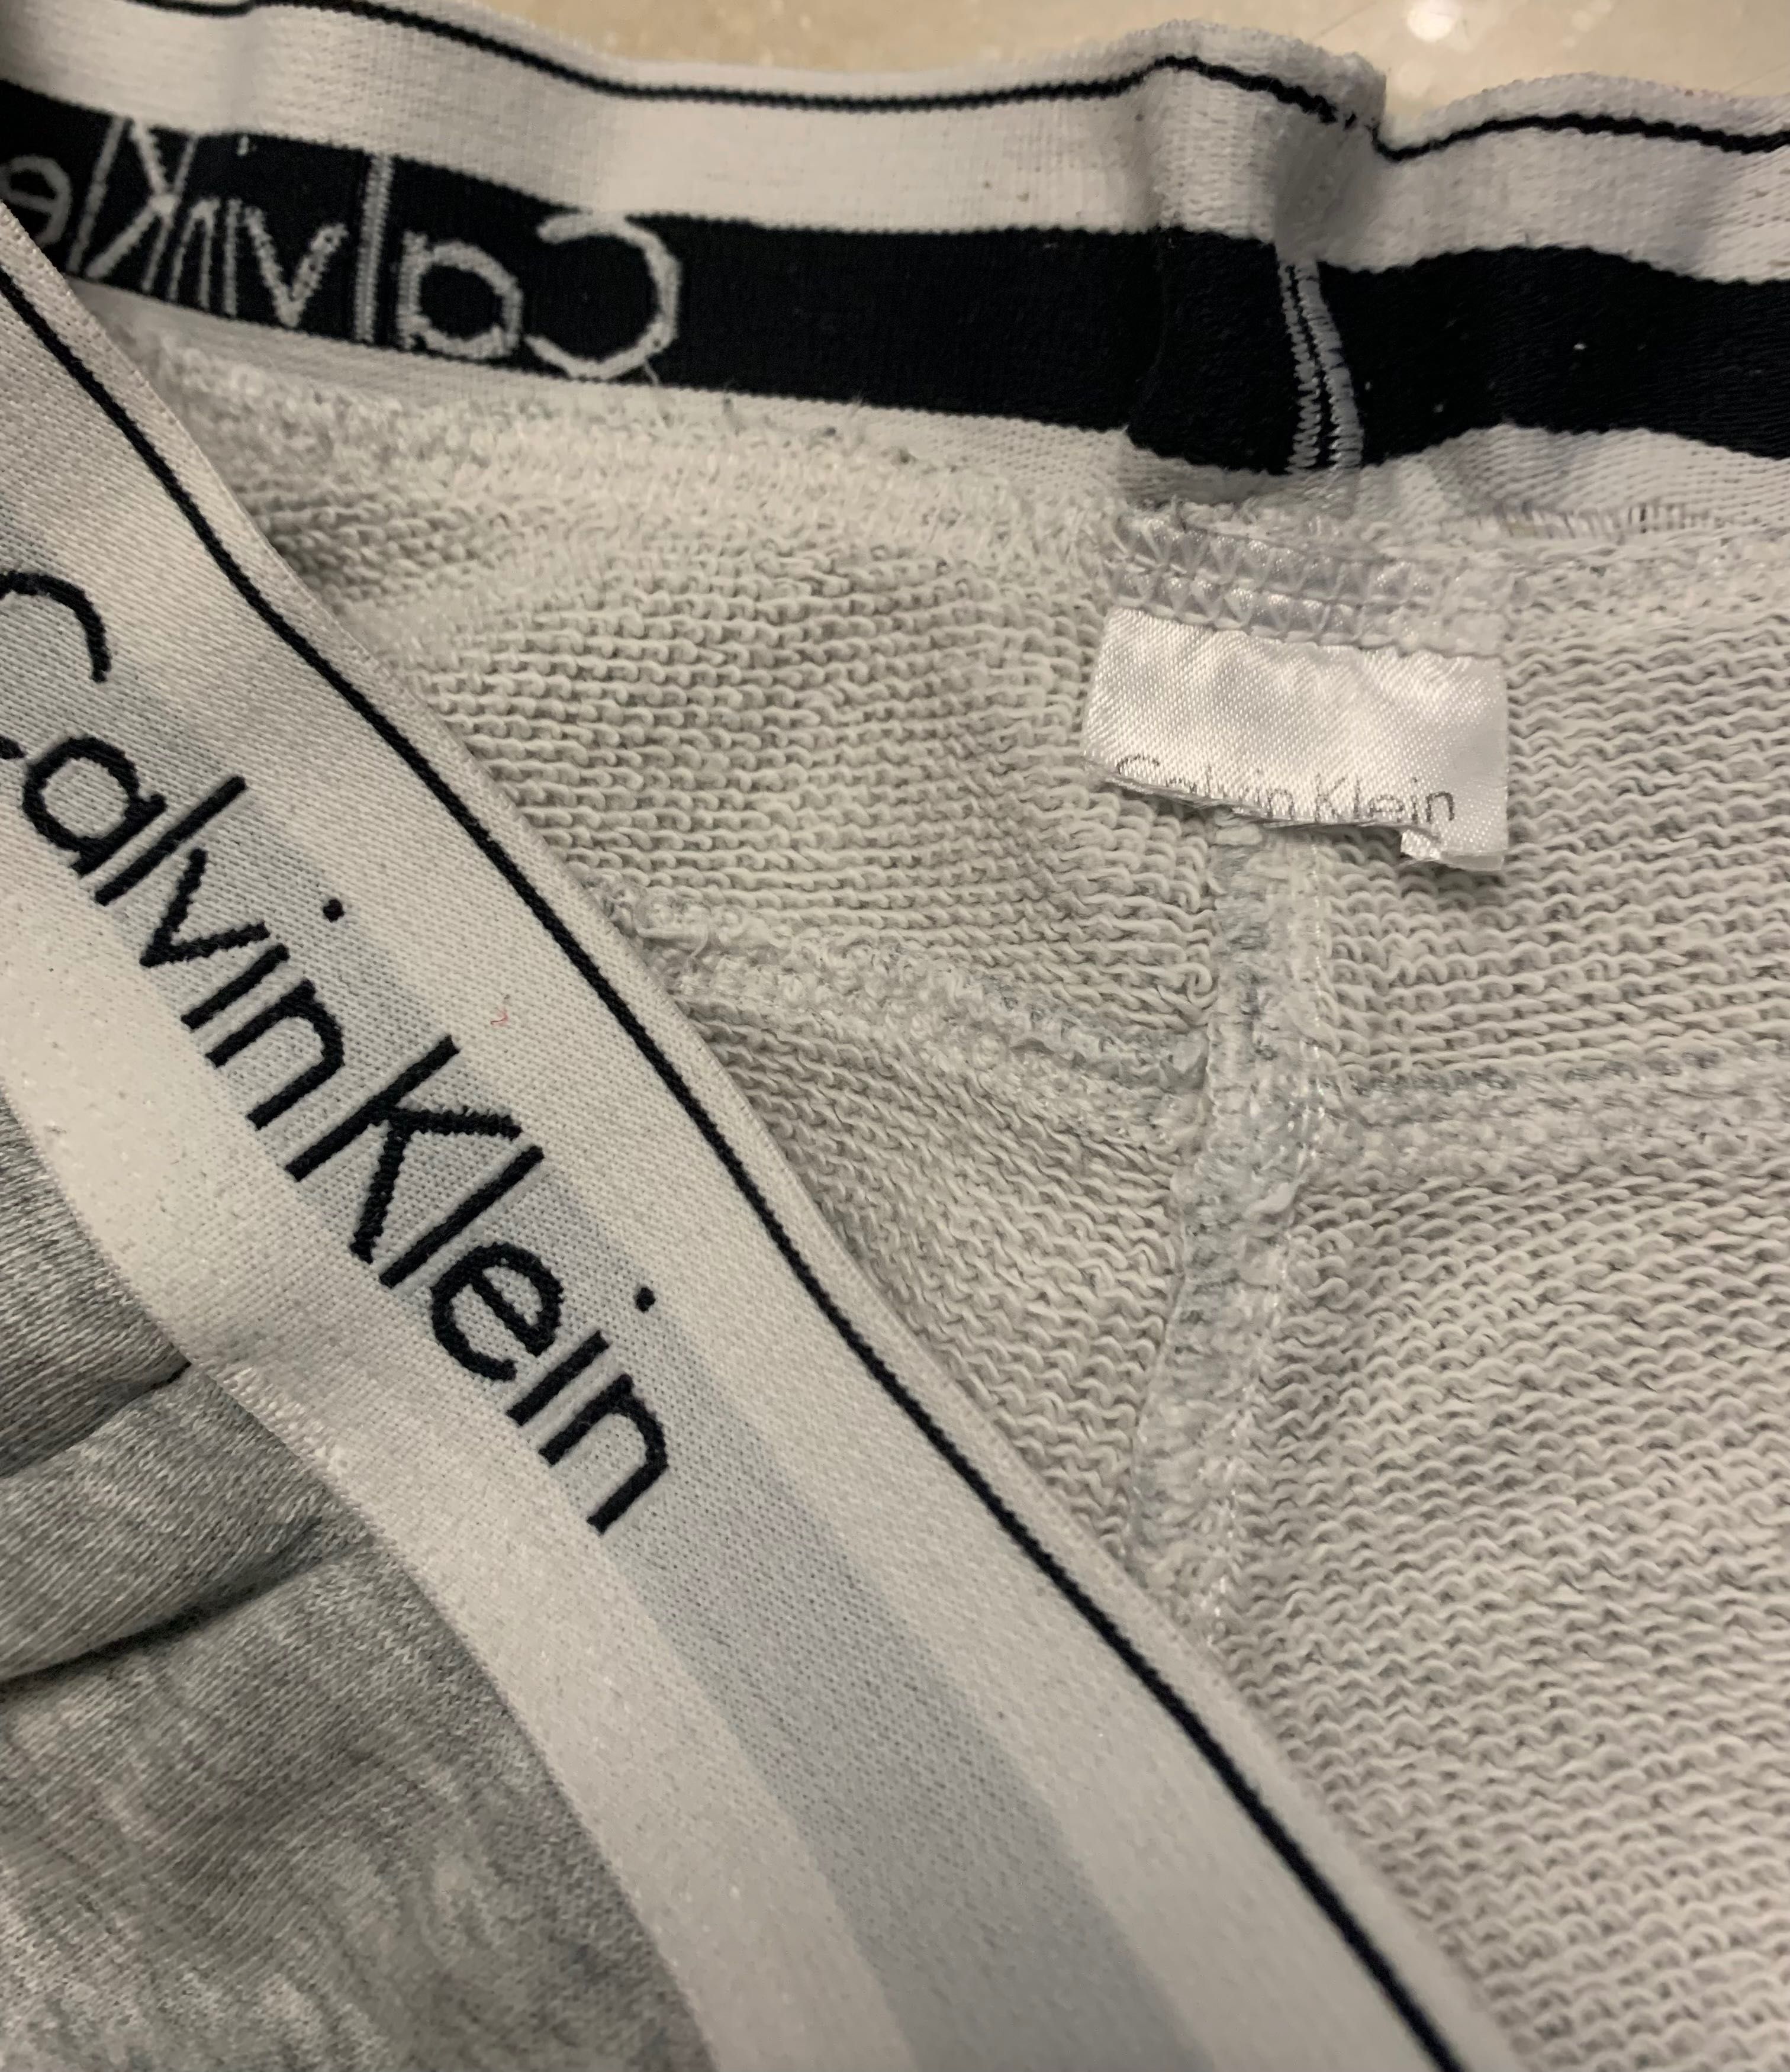 Calvin Klein bawełna spodnie sportowe dresowe, joggery XS/S super stan